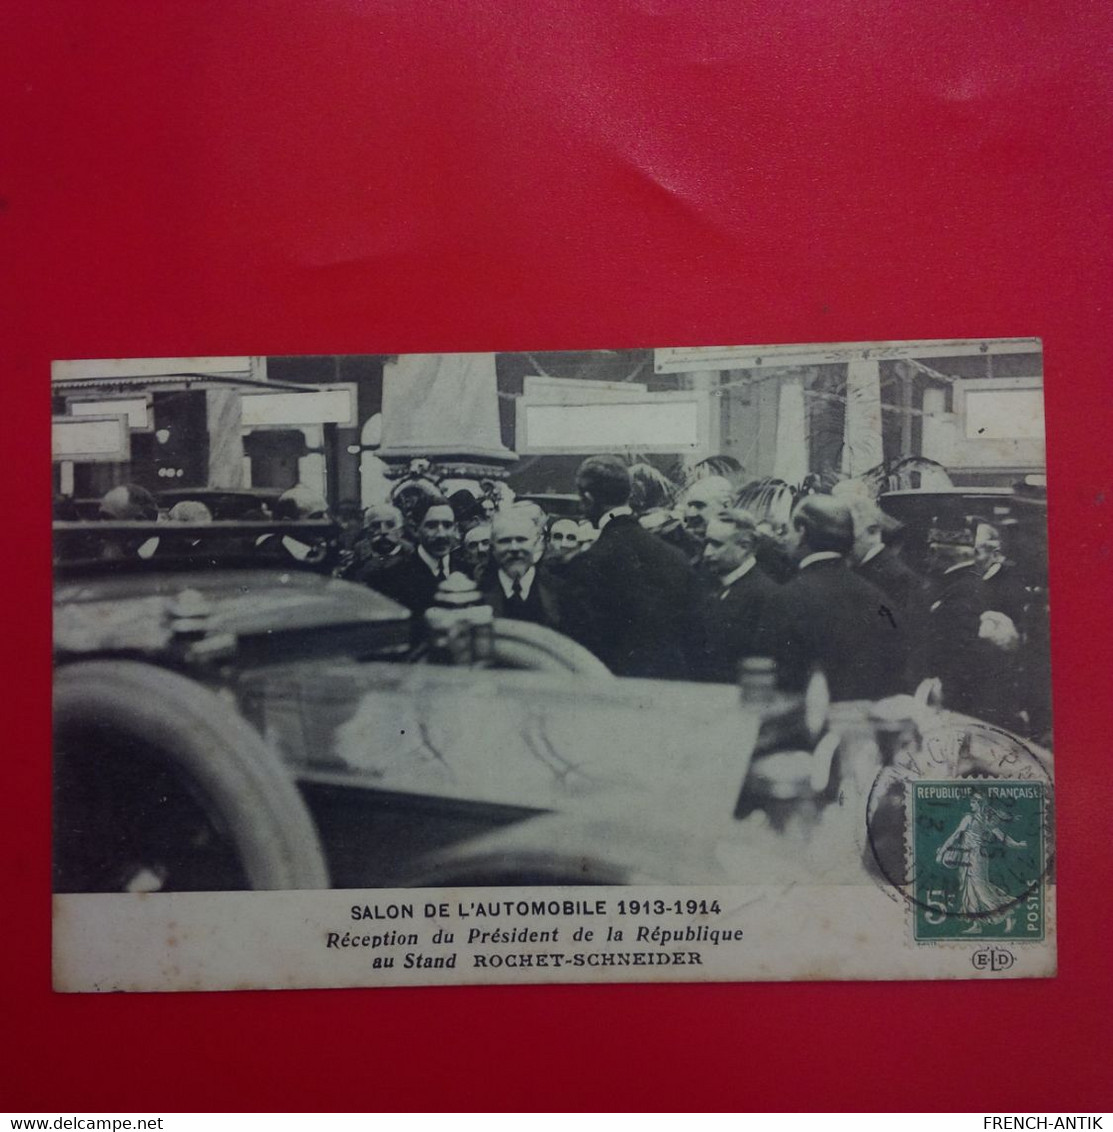 SALON DE L AUTOMOBILE 1913 1914 RECEPTION DU PRESIDENT DE LA REPUBLIQUE POINCARE AU STAND ROCHET SCHNEIDER - Evènements